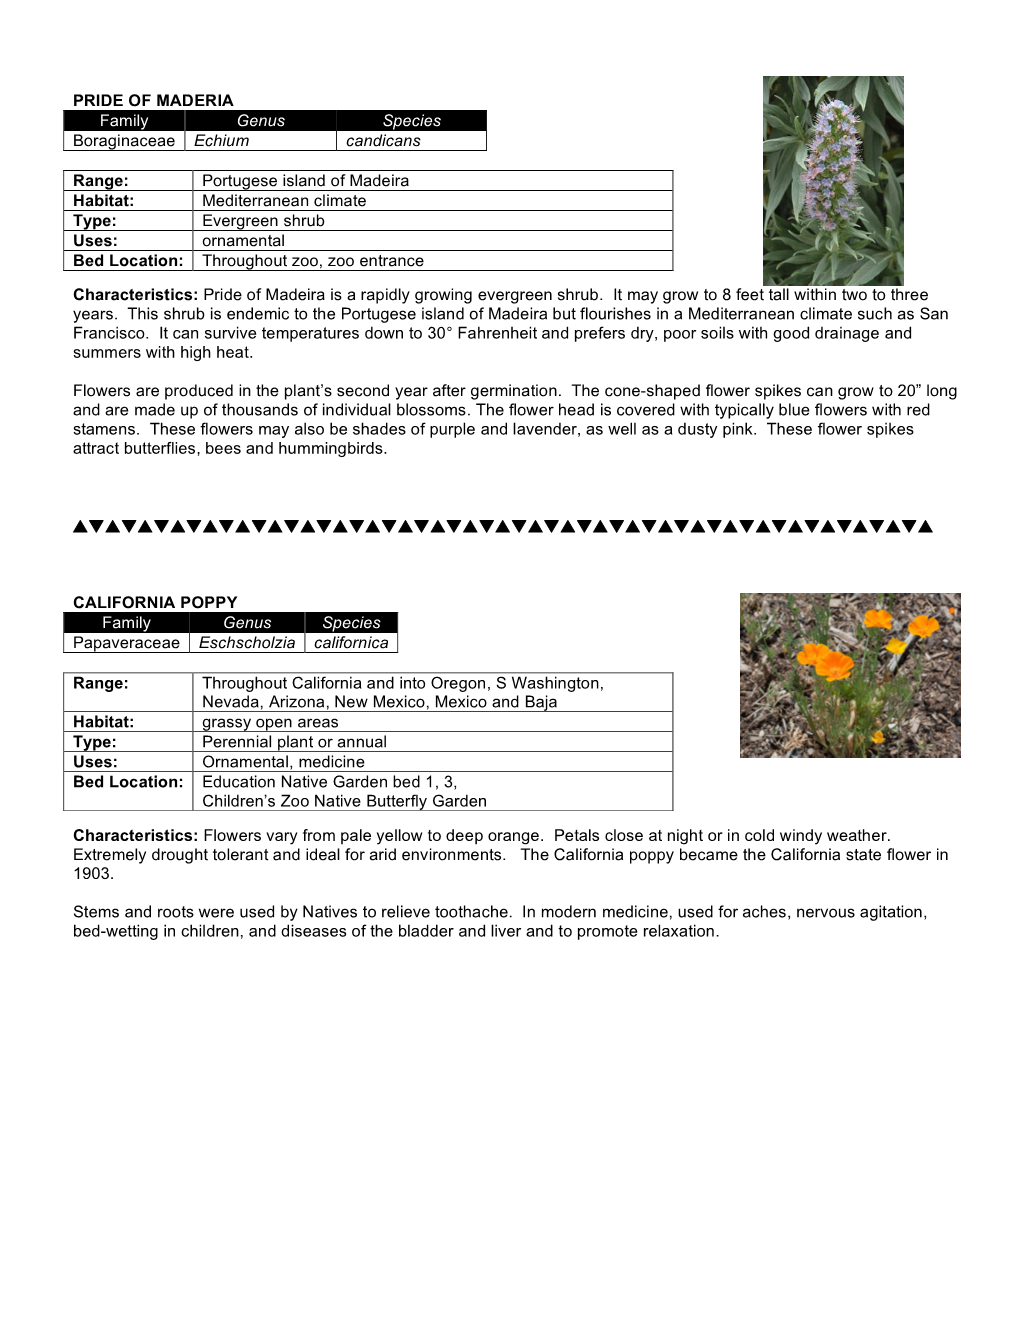 PRIDE of MADERIA Family Genus Species Boraginaceae Echium Candicans